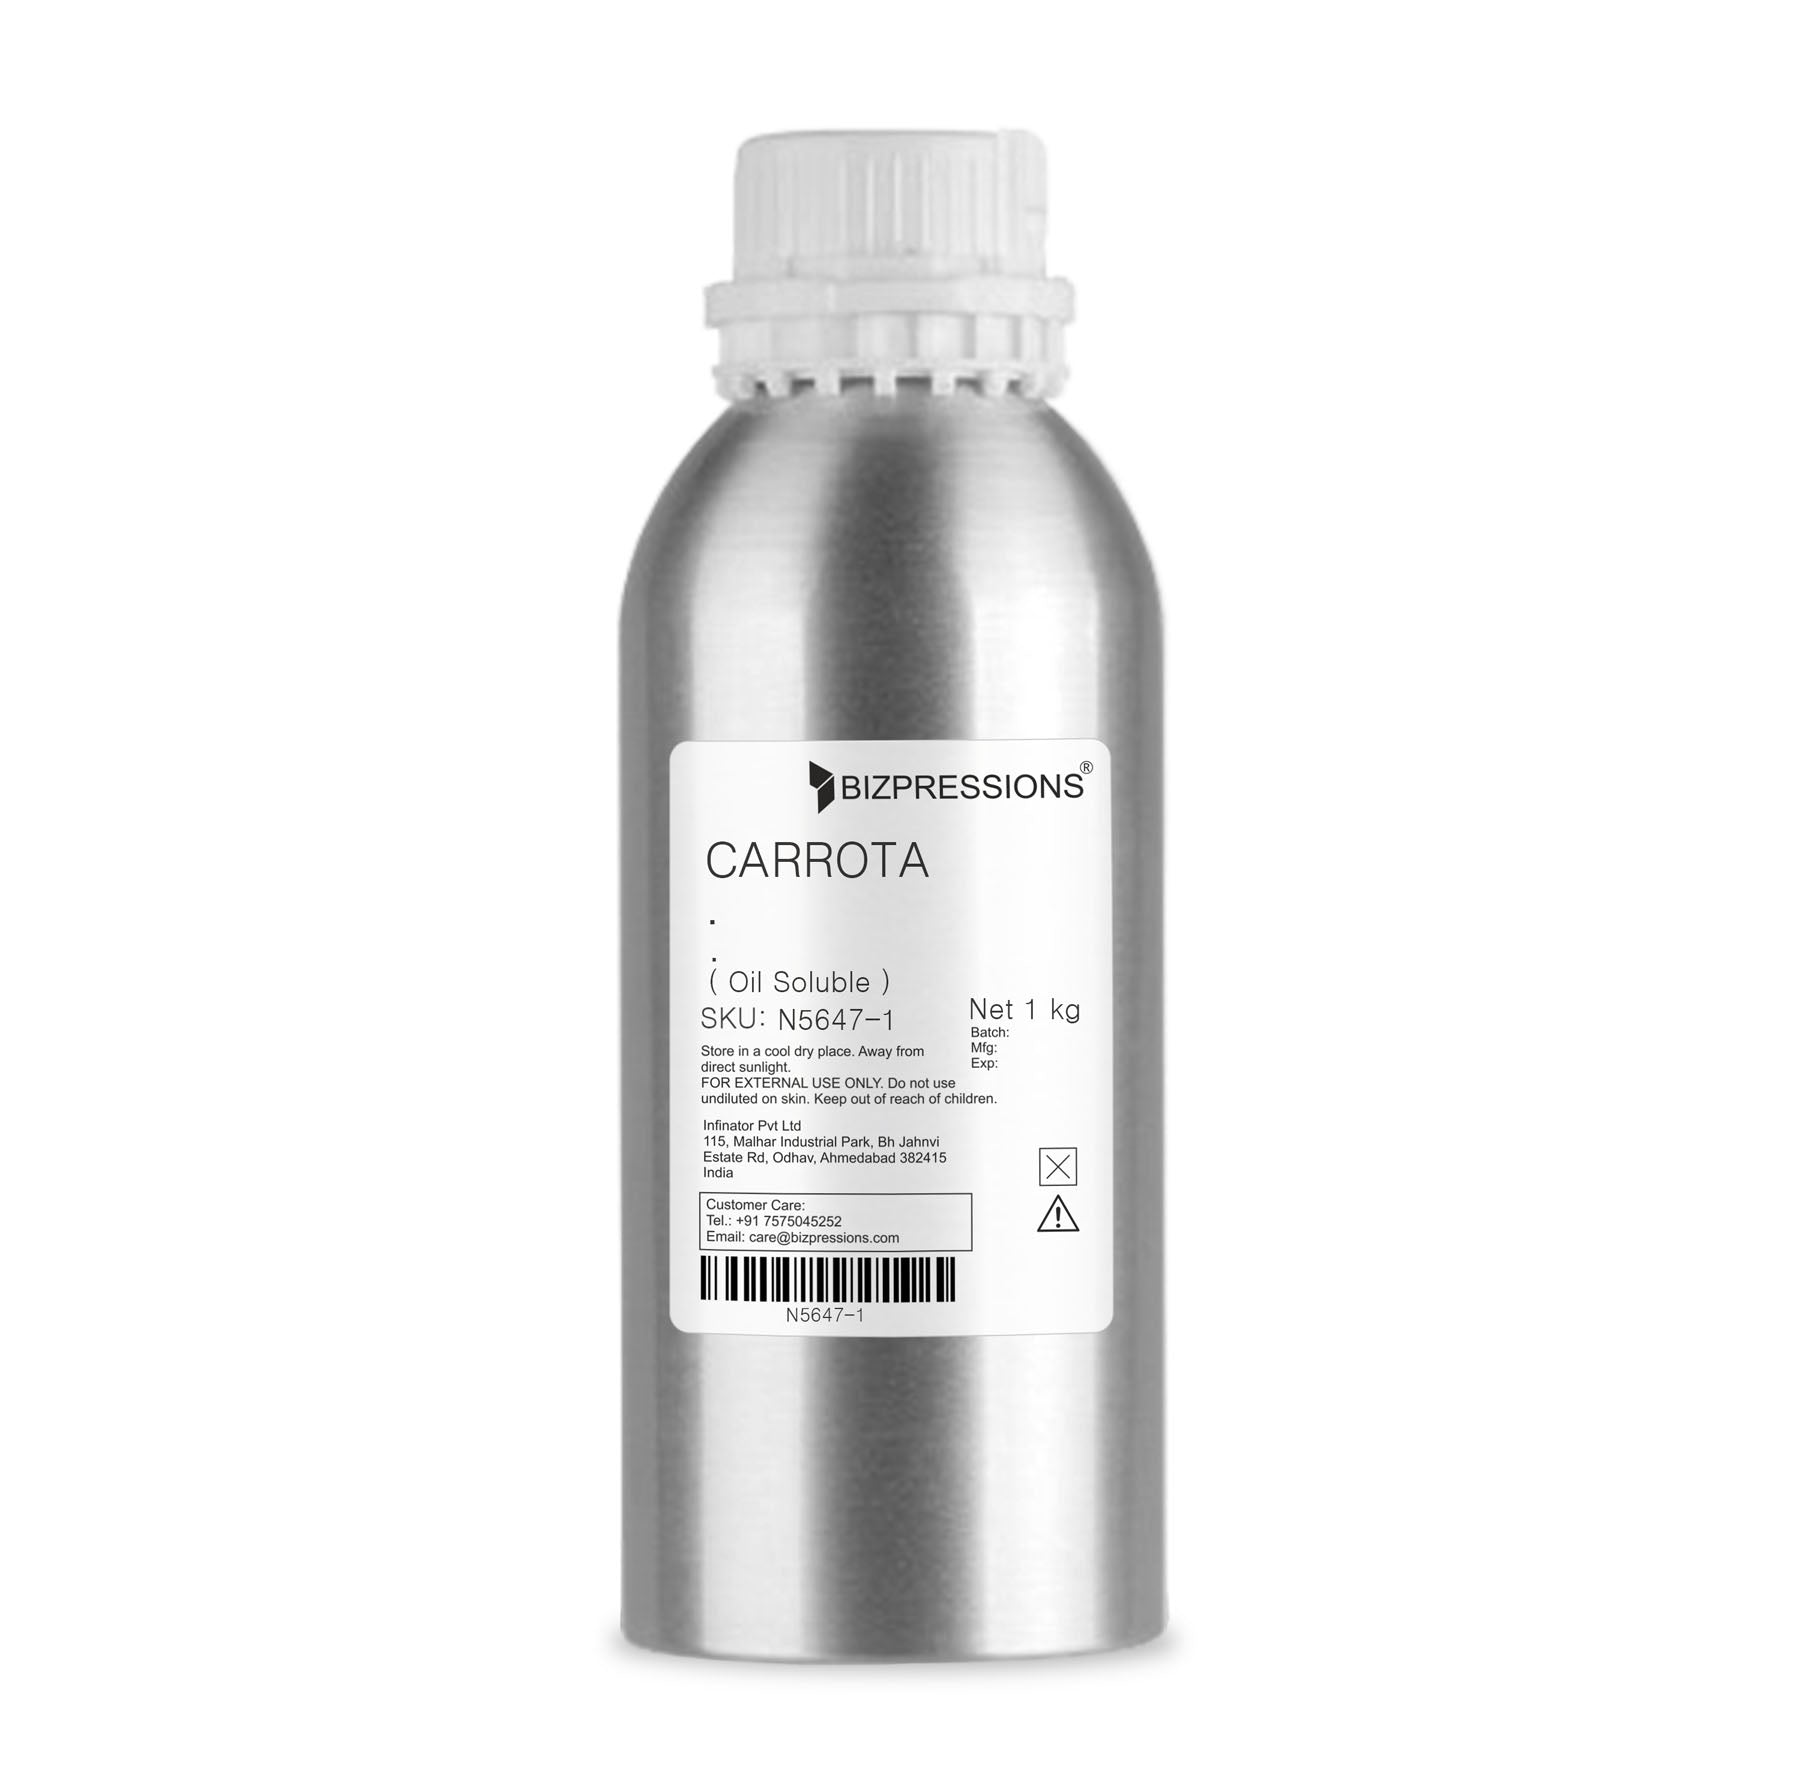 CARROTA - Fragrance ( Oil Soluble ) - 1 kg